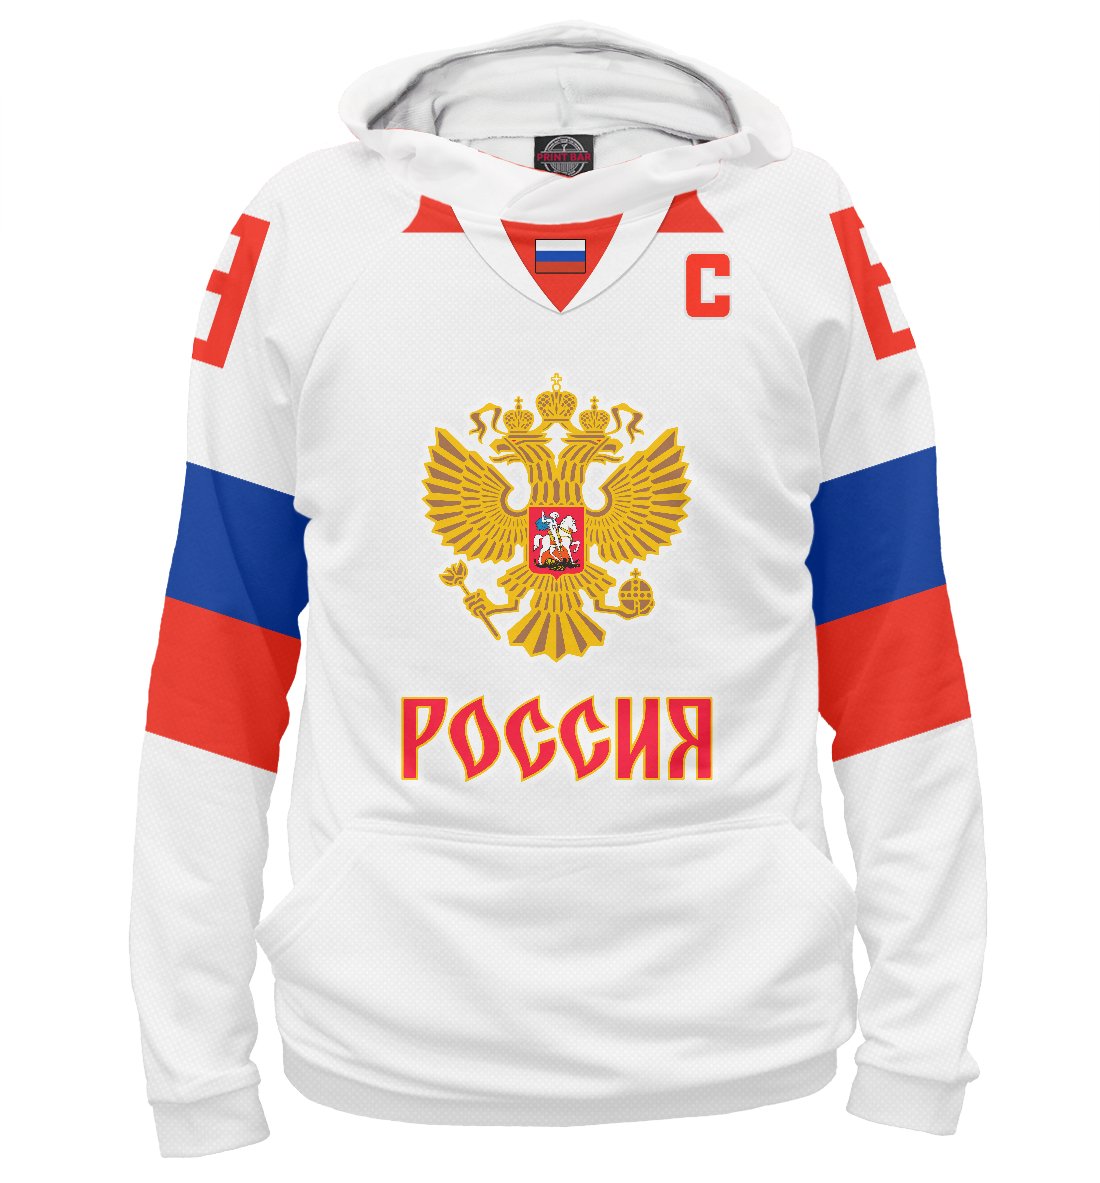 Хоккейная форма сборной россии